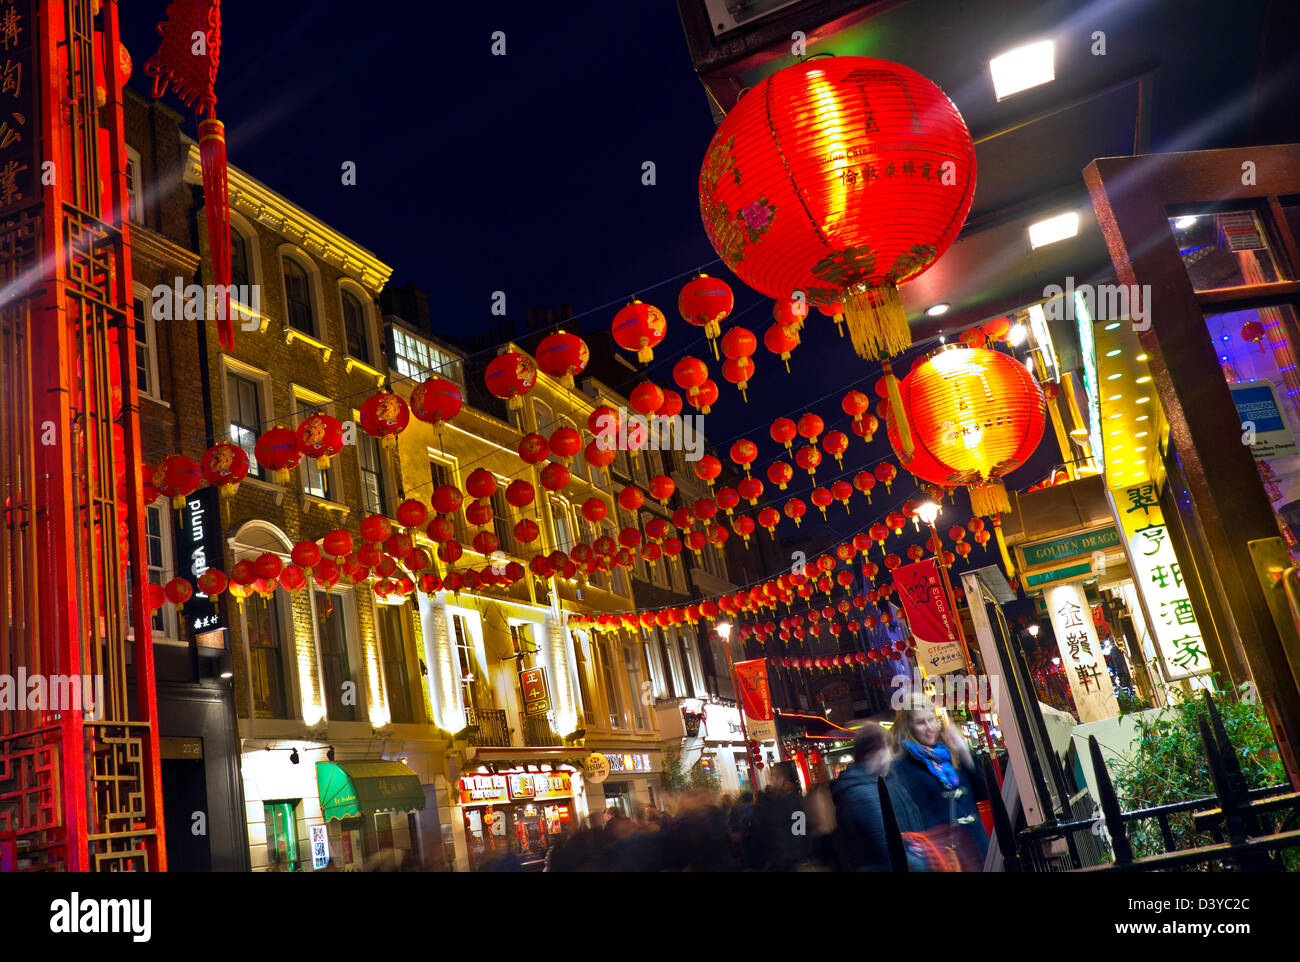 Nouvel an chinois SOHO Chinatown restaurants lanternes illuminées lors d'une nuit animée dans Chinatown Soho Londres Royaume-Uni Banque D'Images